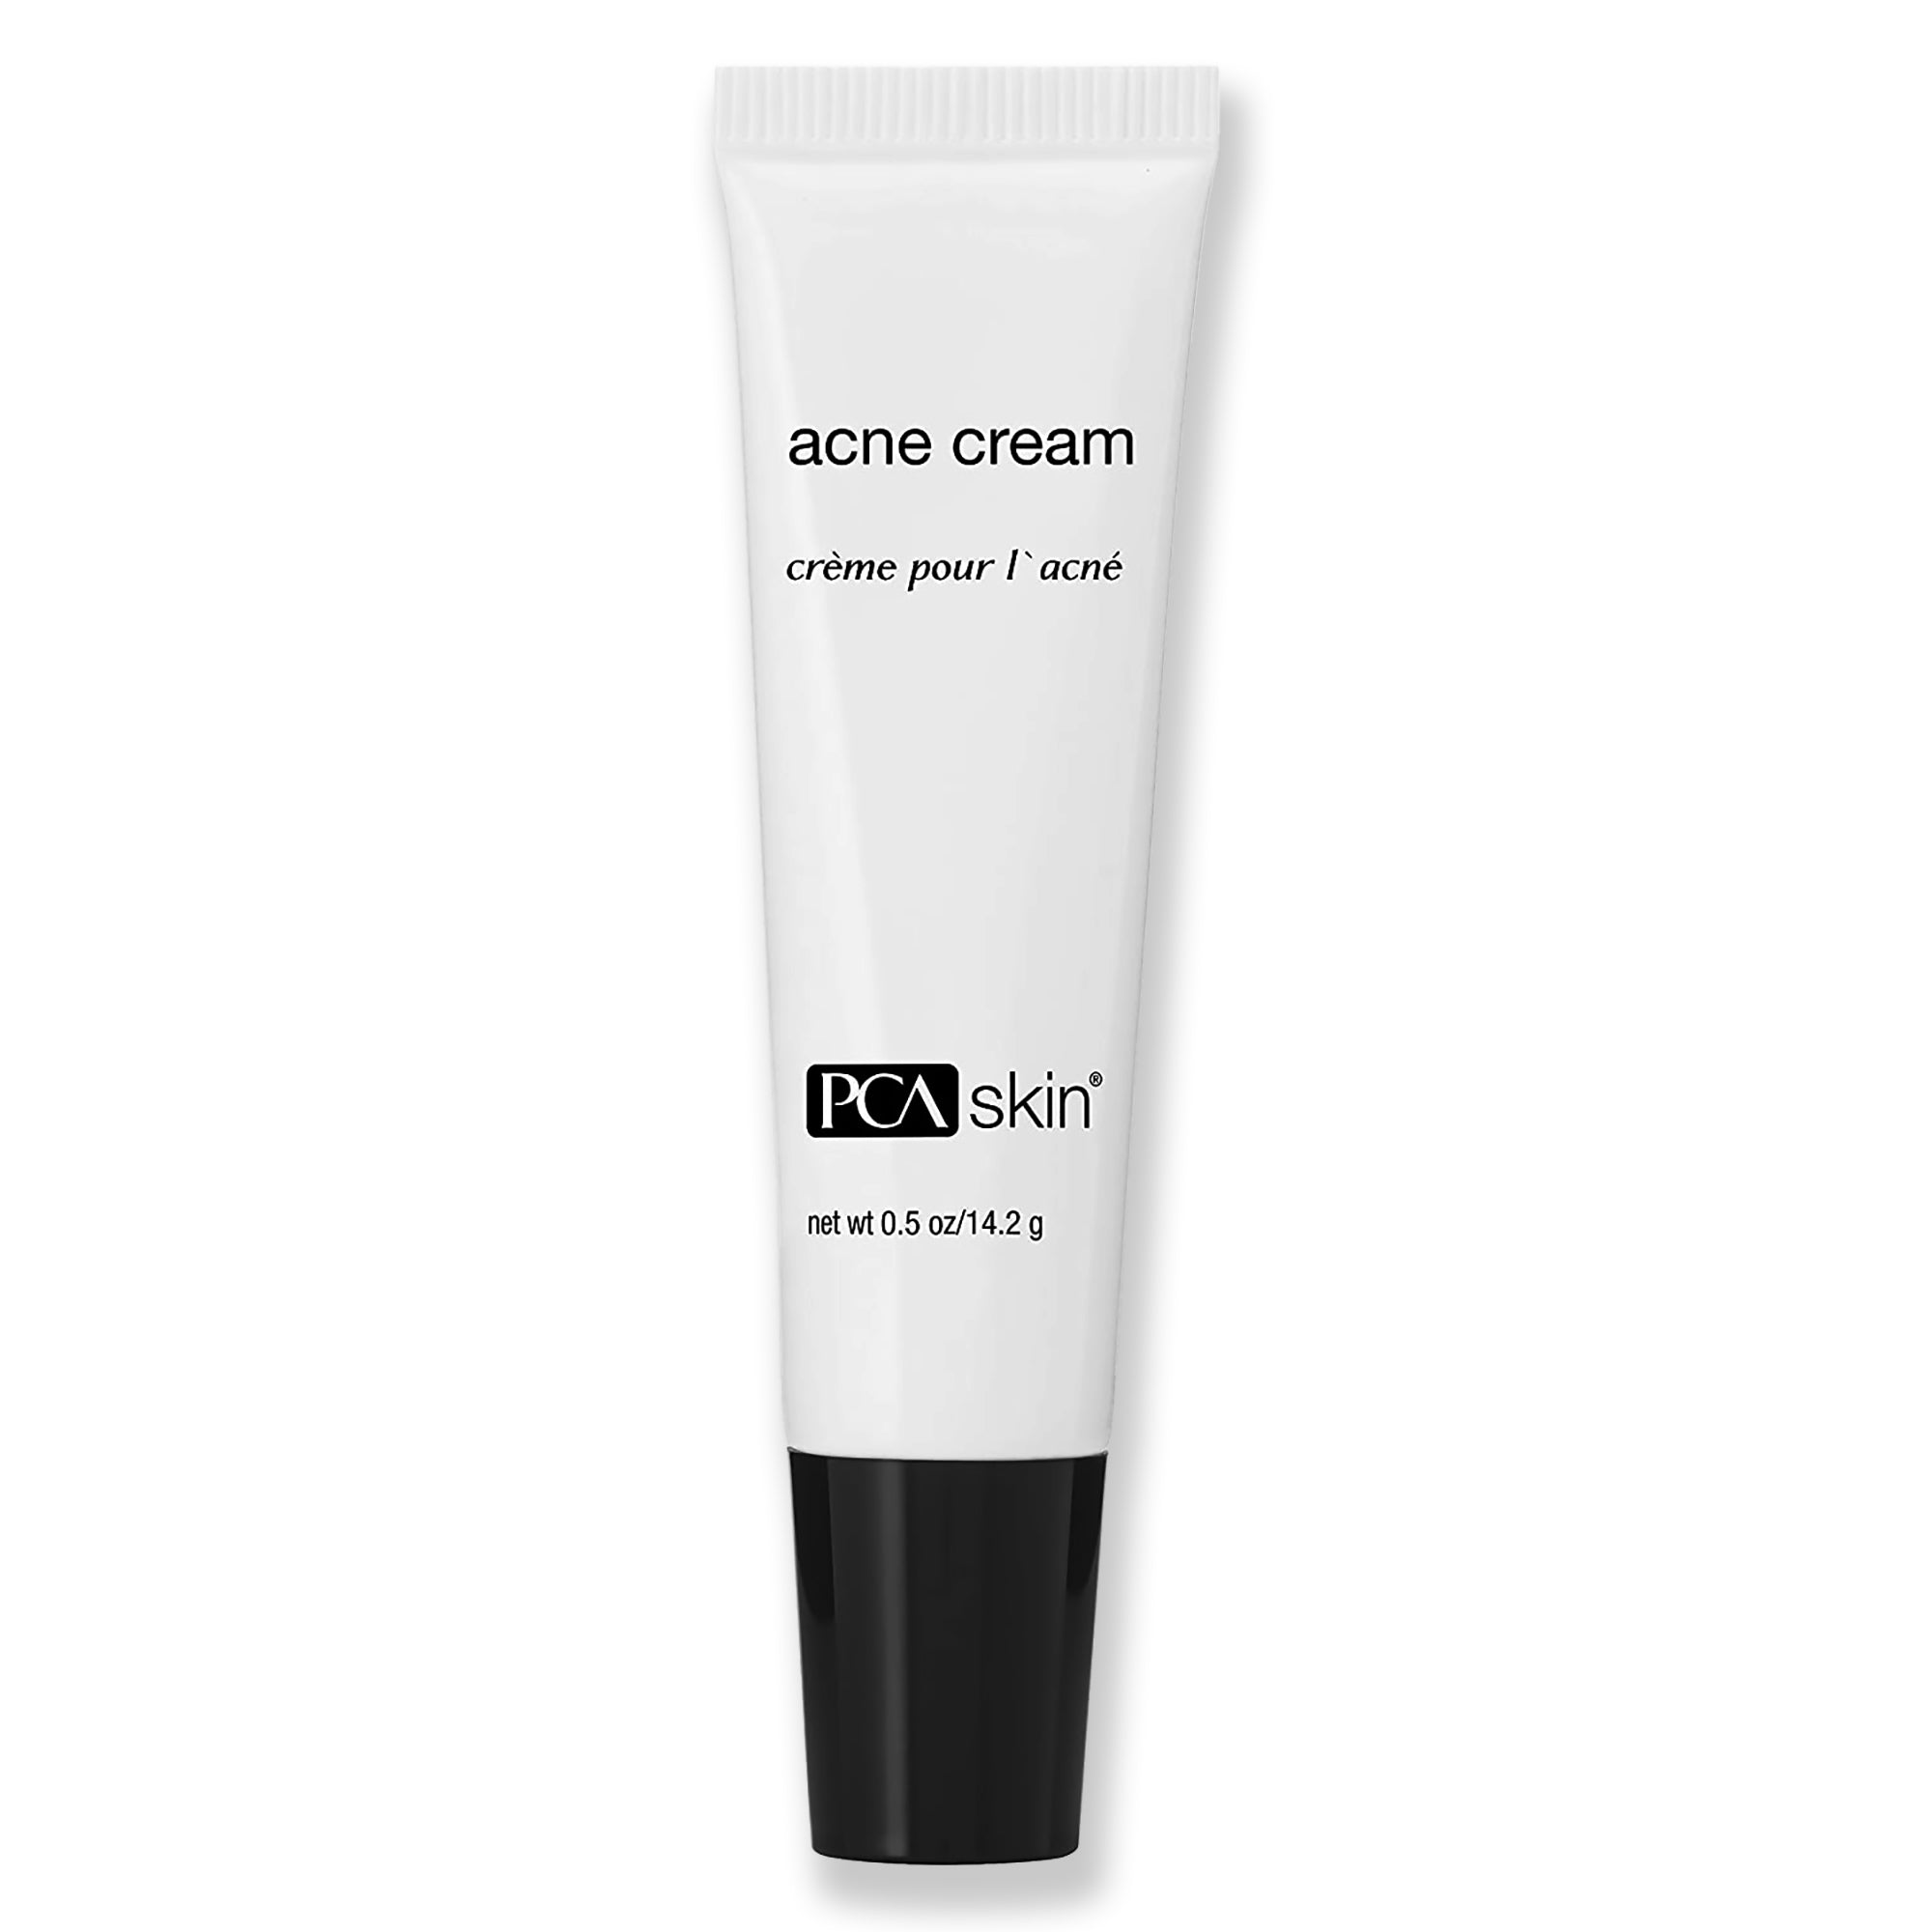 PCA SKIN Acne Cream / 0.5OZ